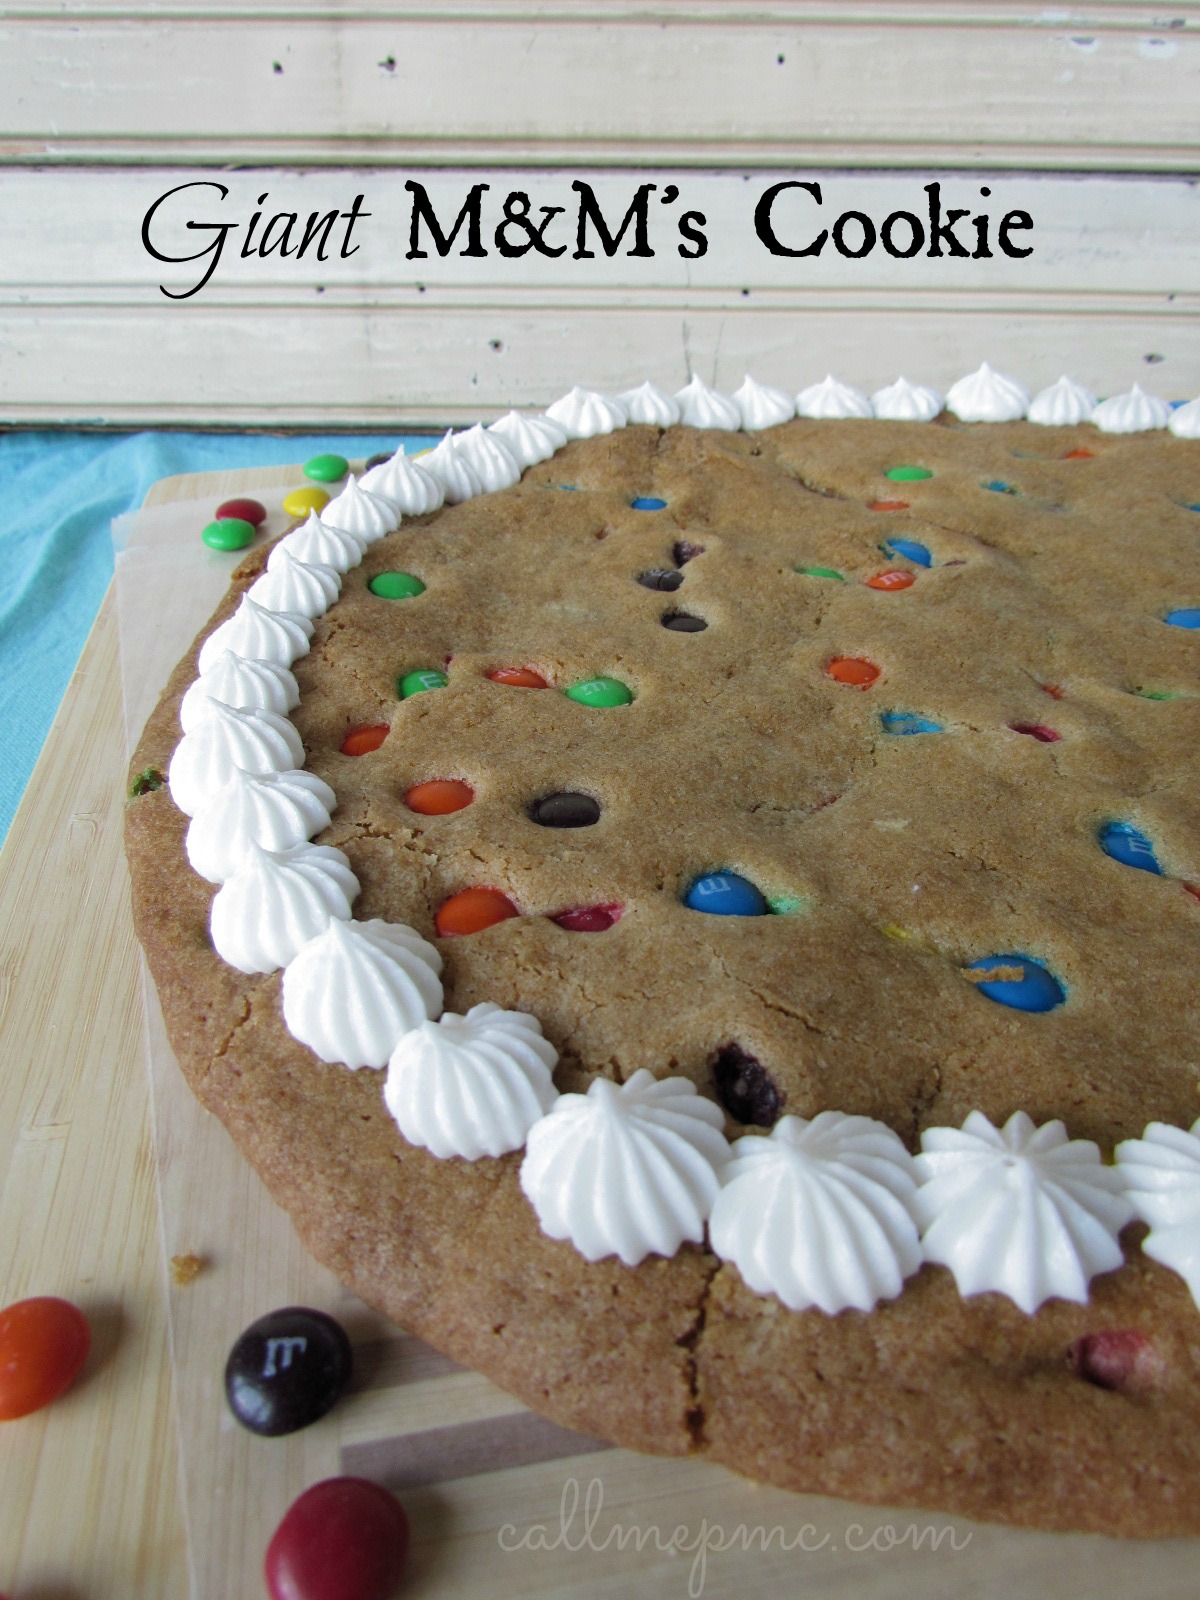 M&M's Cookie www.callmepmc.com